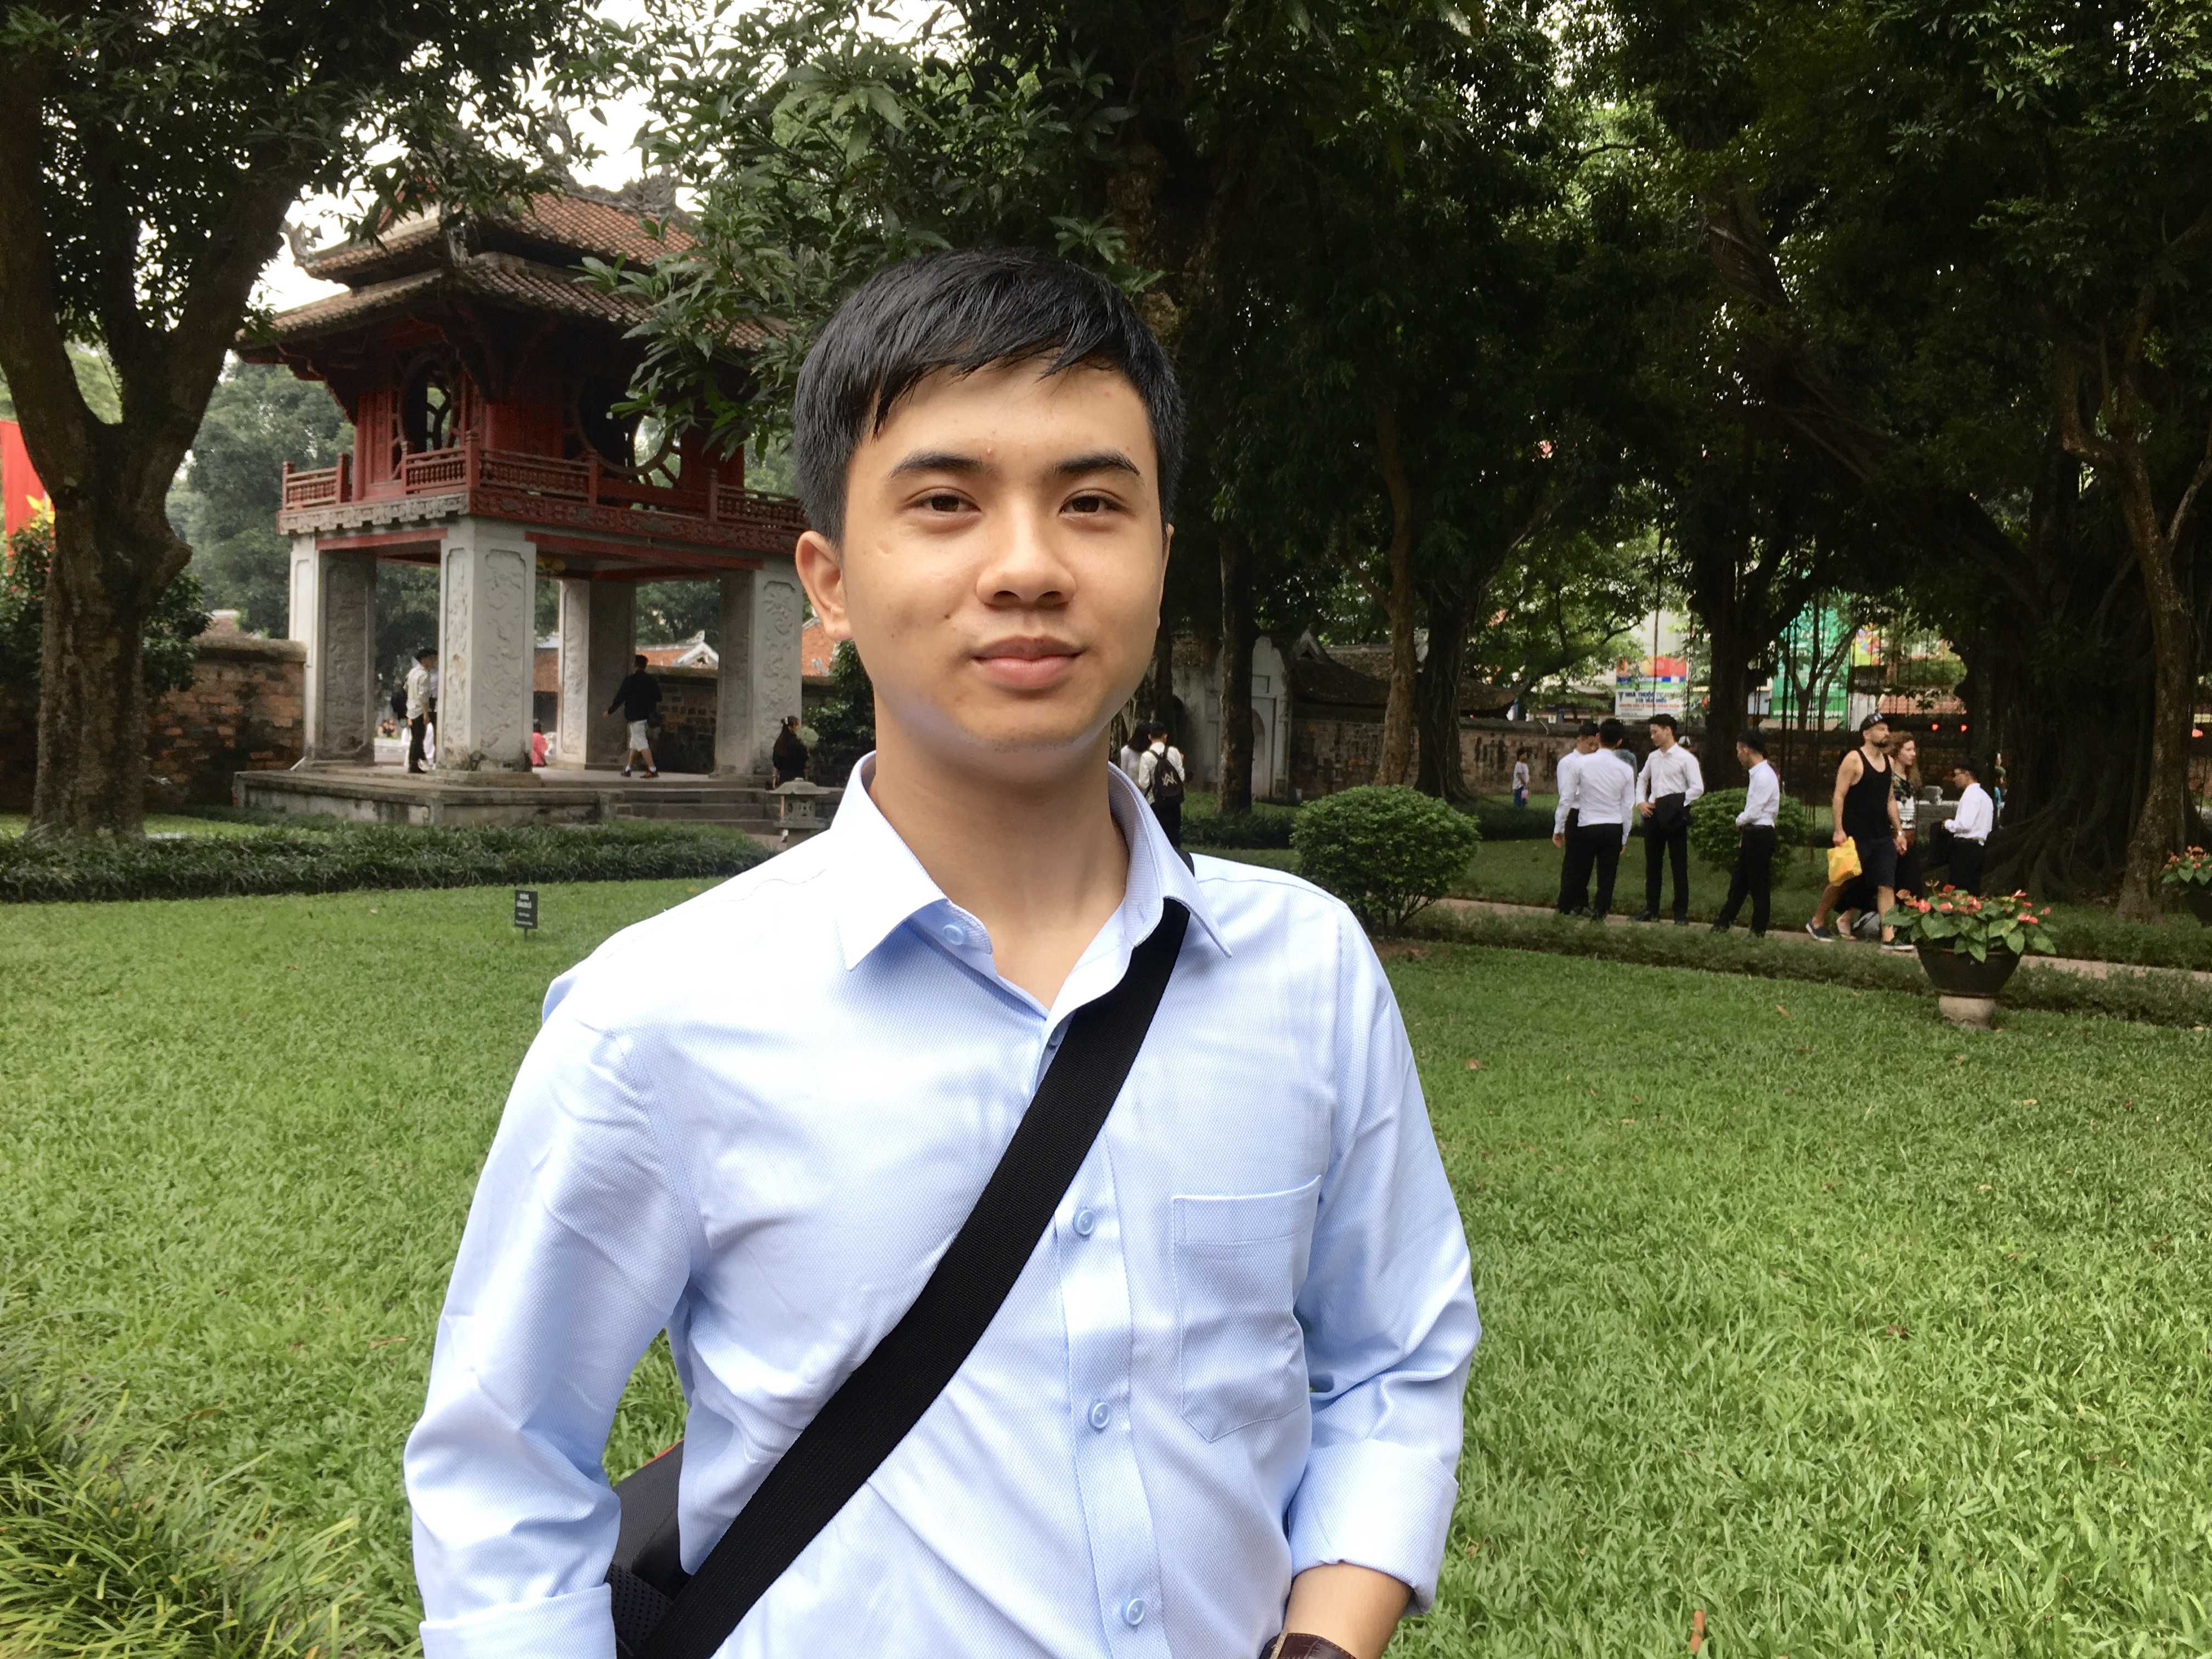 Thủ khoa tốt nghiệp đầu ra Trường Đại học Khoa học Tự nhiên - Đại học Quốc gia Hà Nội: Khi theo đuổi đam mê, việc học rất nhẹ nhàng